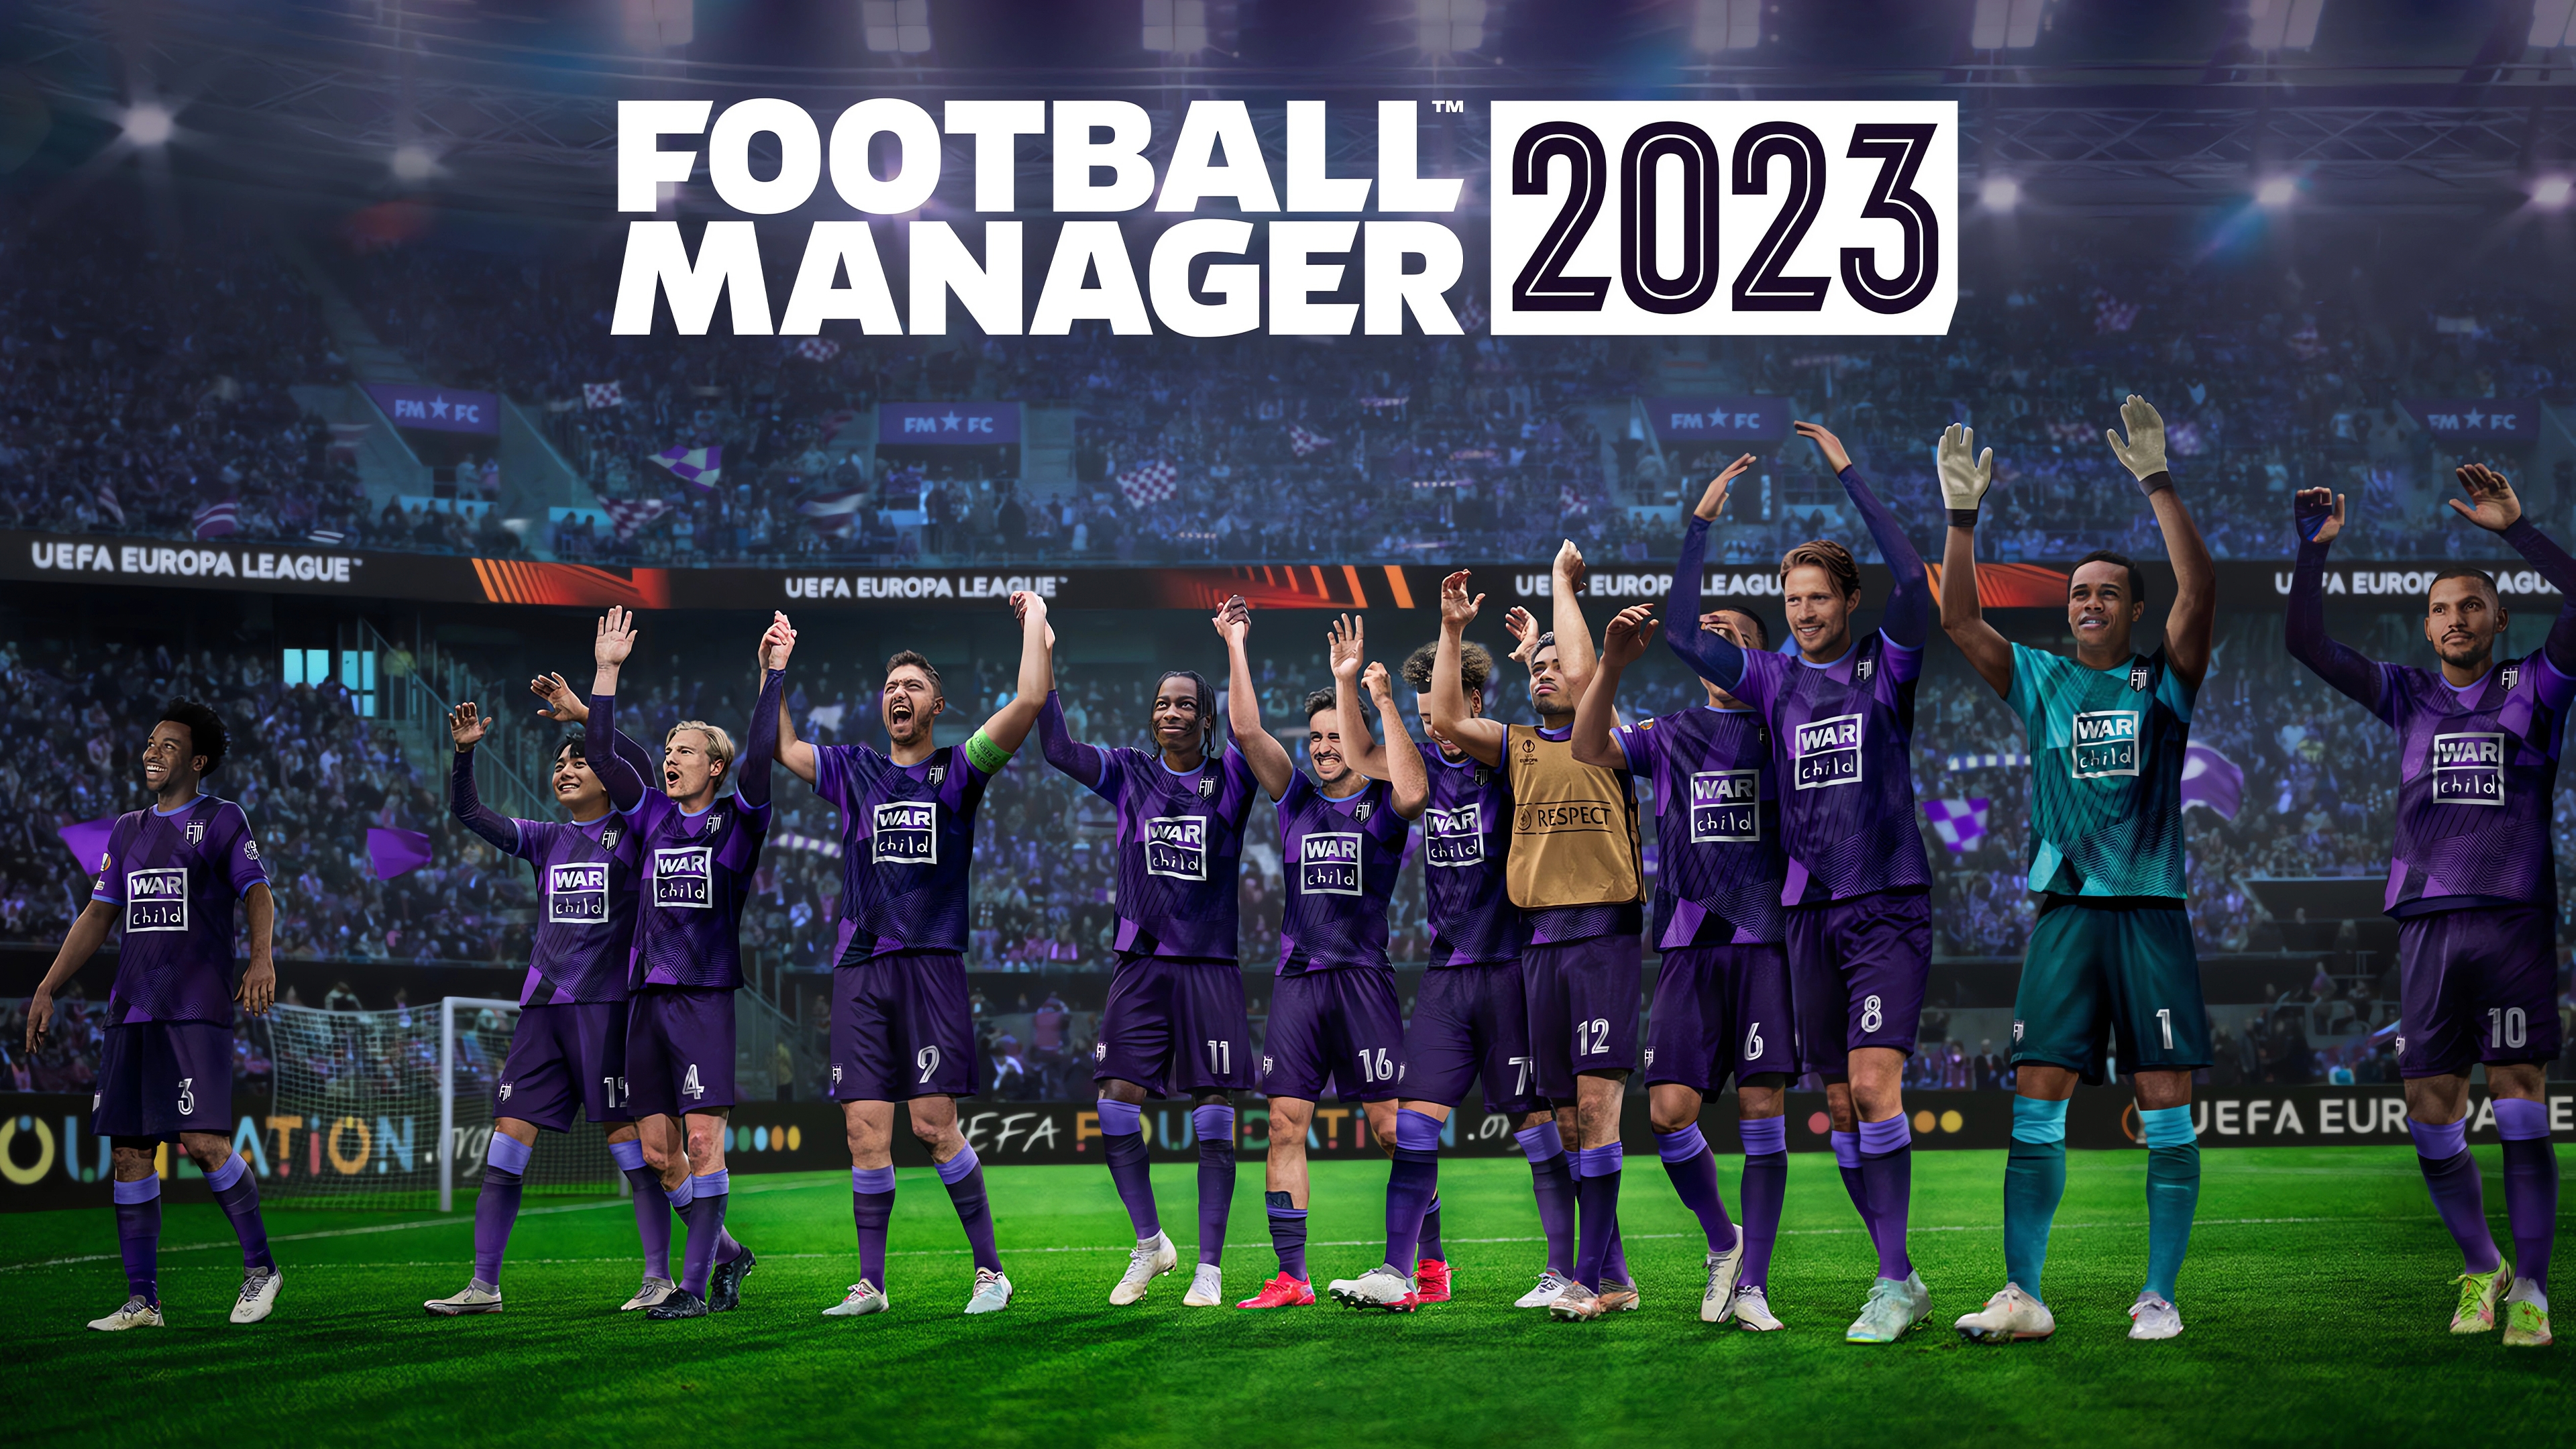 Cheapest Football Manager 2023 PC (STEAM) EU